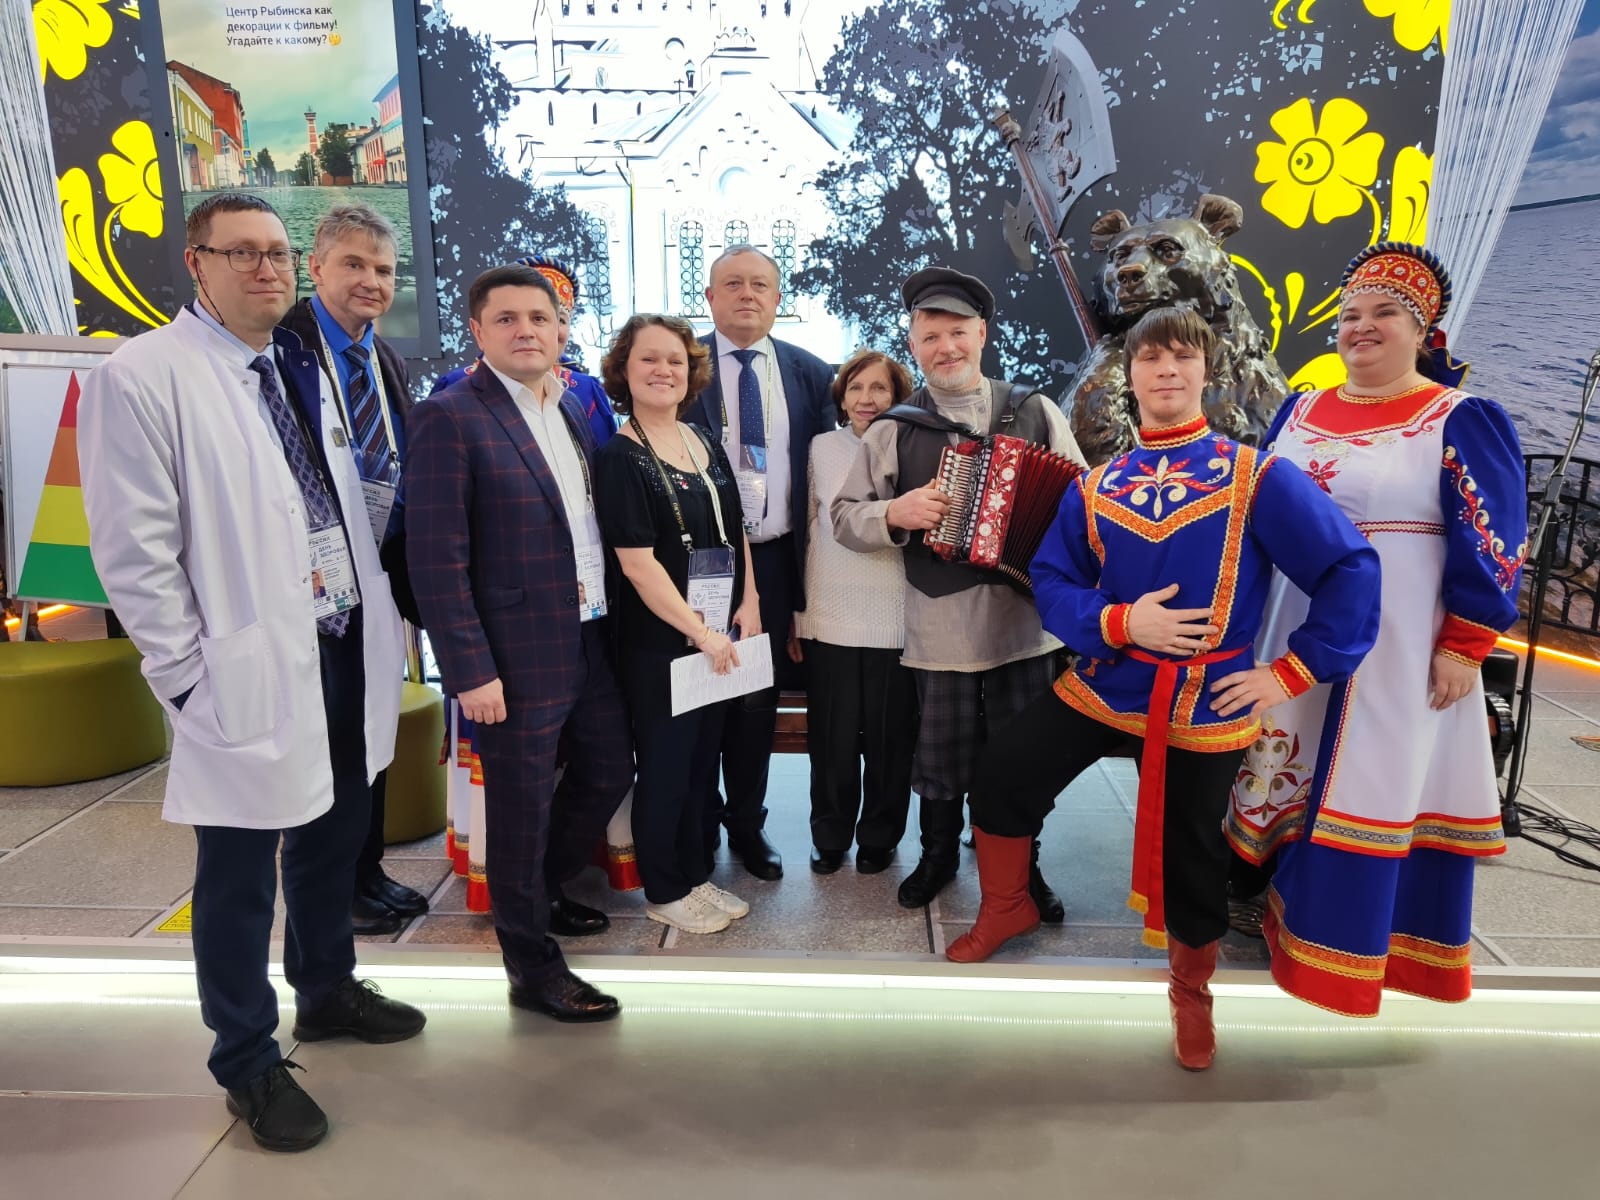 Достижения системы здравоохранения Ярославской области представлены на выставке «Россия»